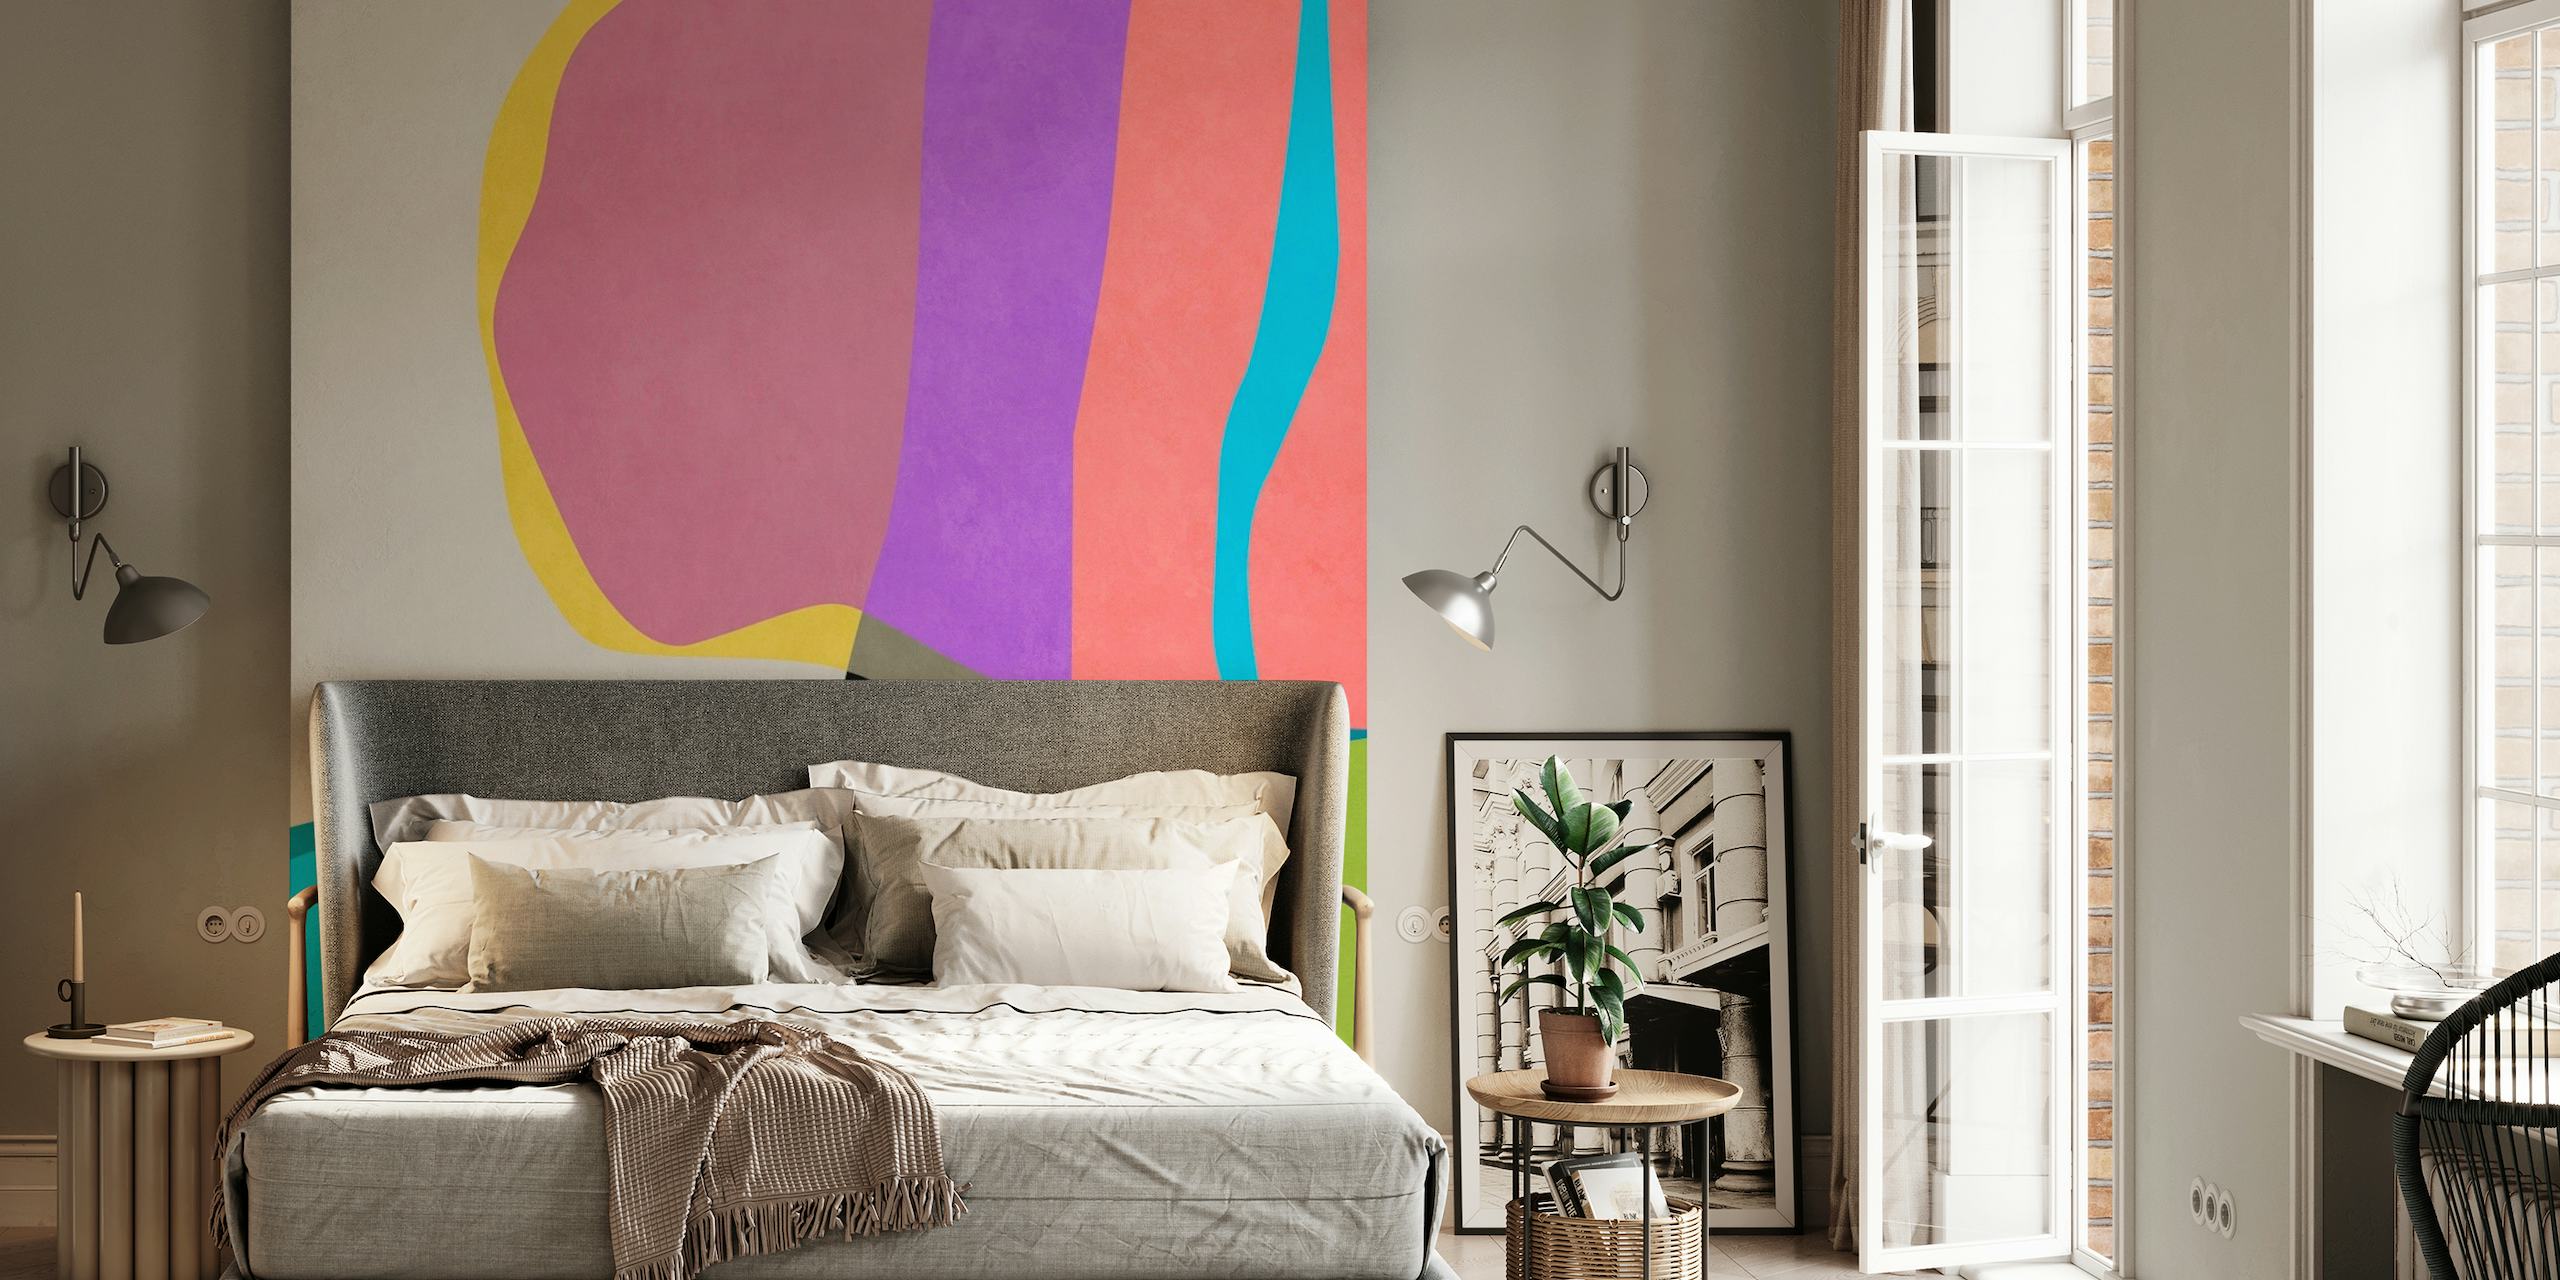 Abstrakti seinämaalaus eloisilla väreillä ja sulavilla muodoilla luovat liikkeen tunteen